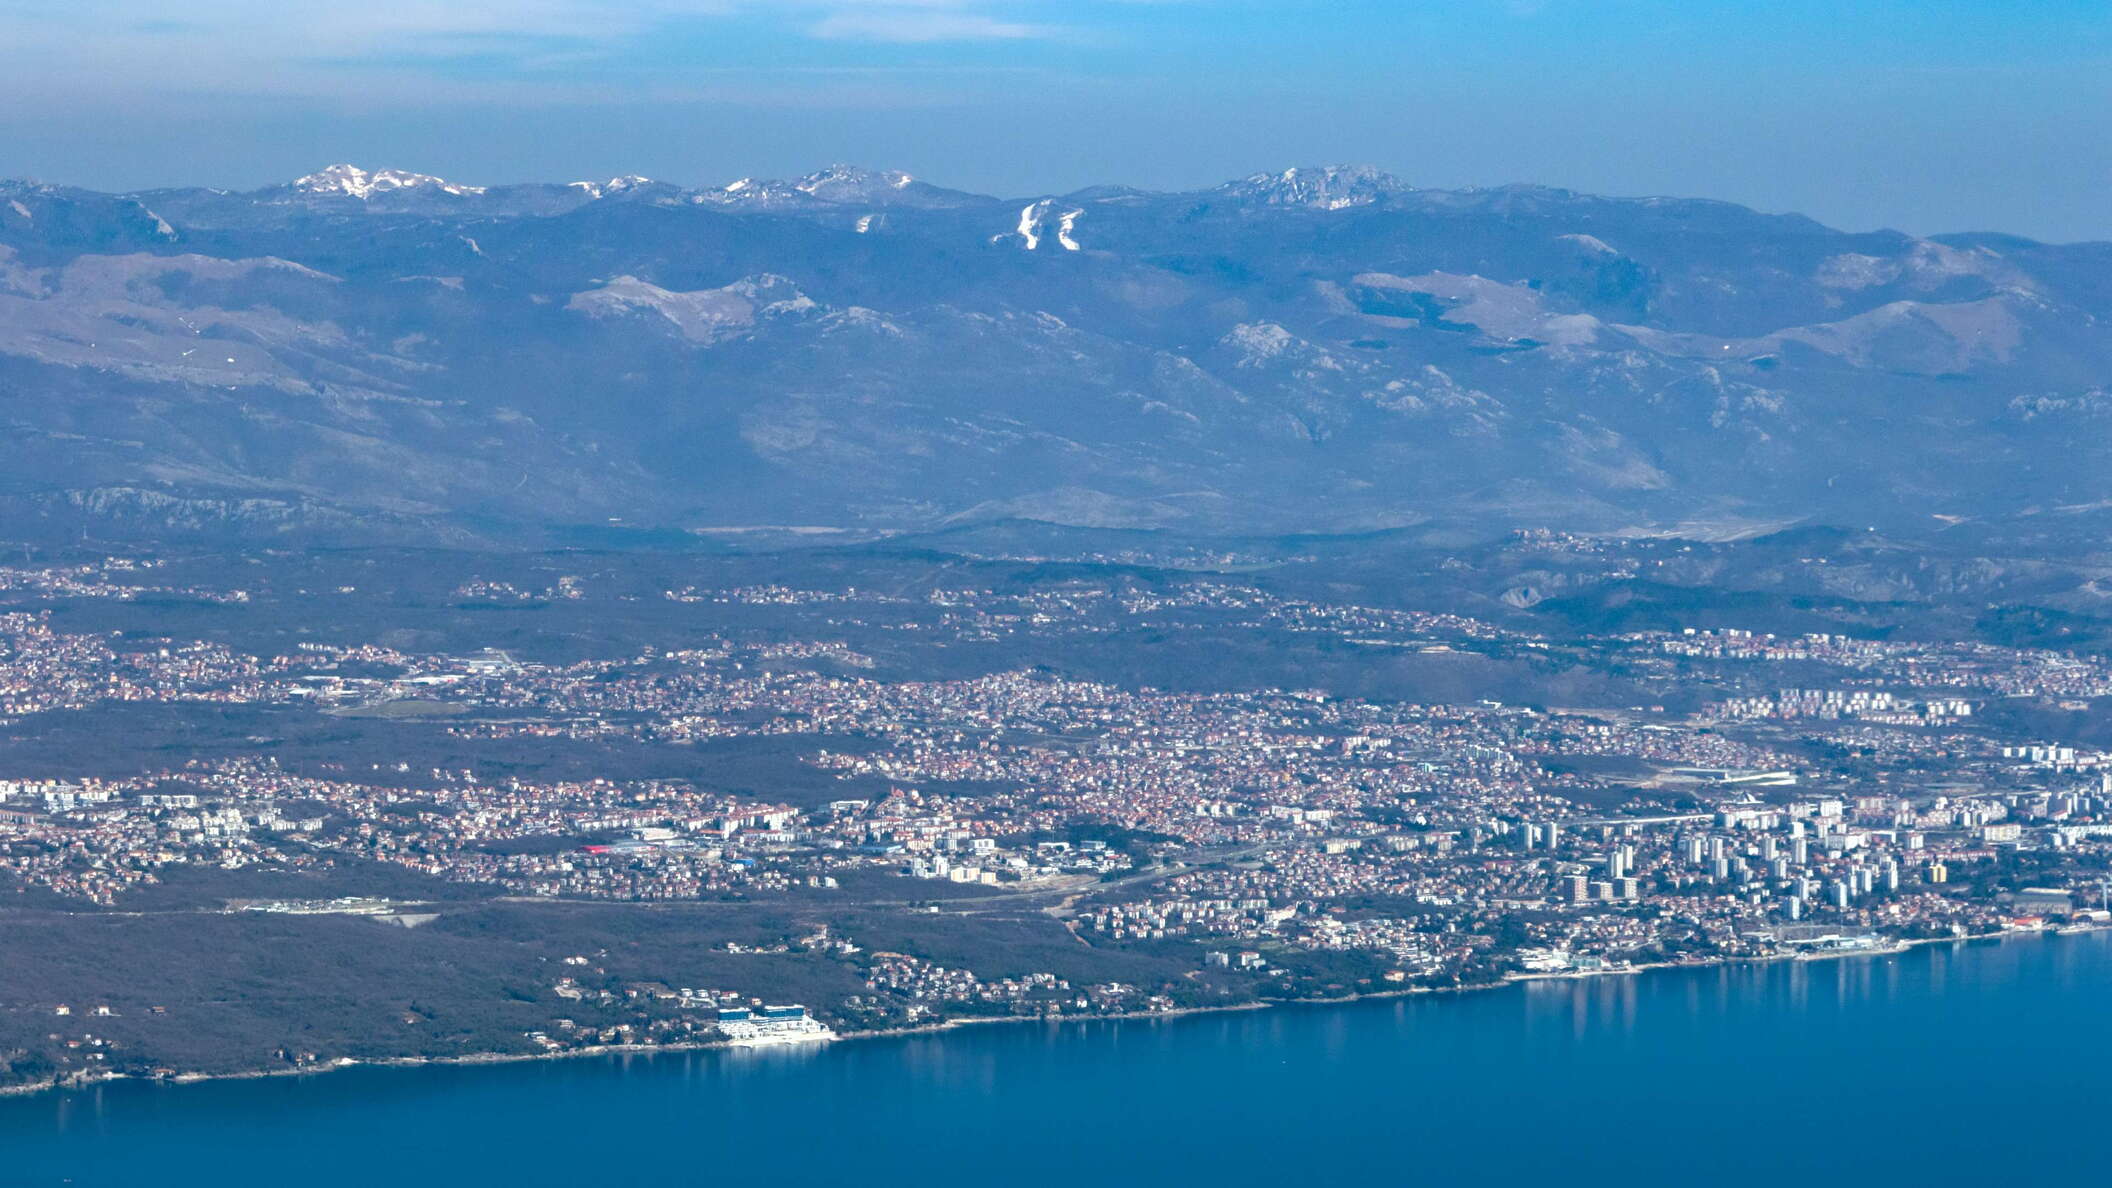 Rijeka | NW suburbs and Gorski kotar